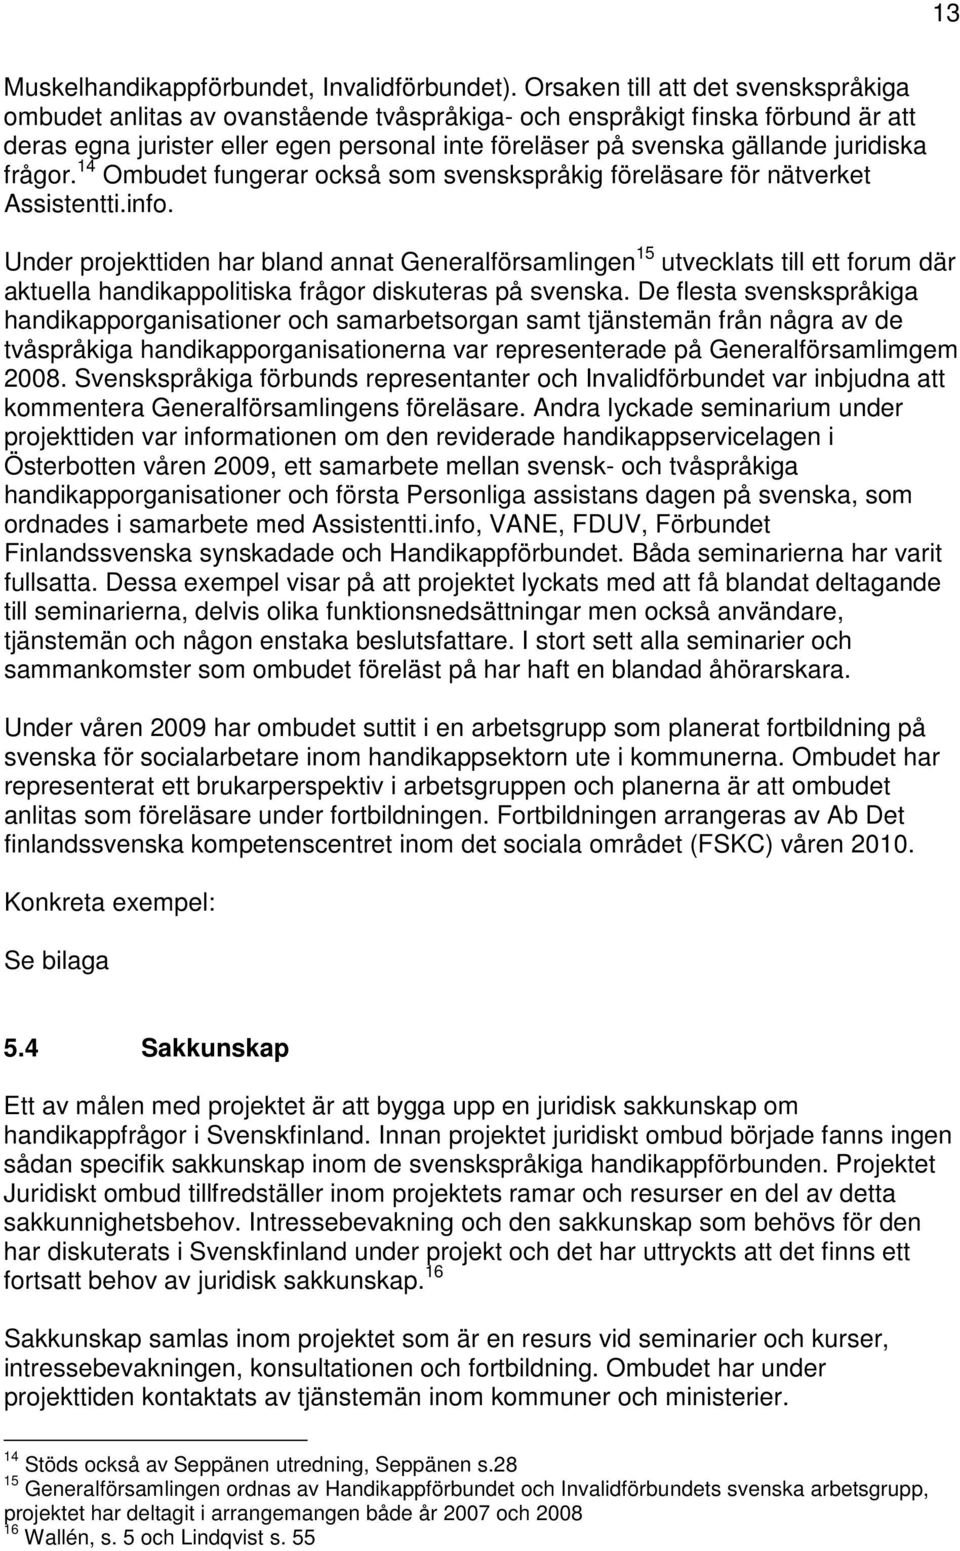 juridiska frågor. 14 Ombudet fungerar också som svenskspråkig föreläsare för nätverket Assistentti.info.